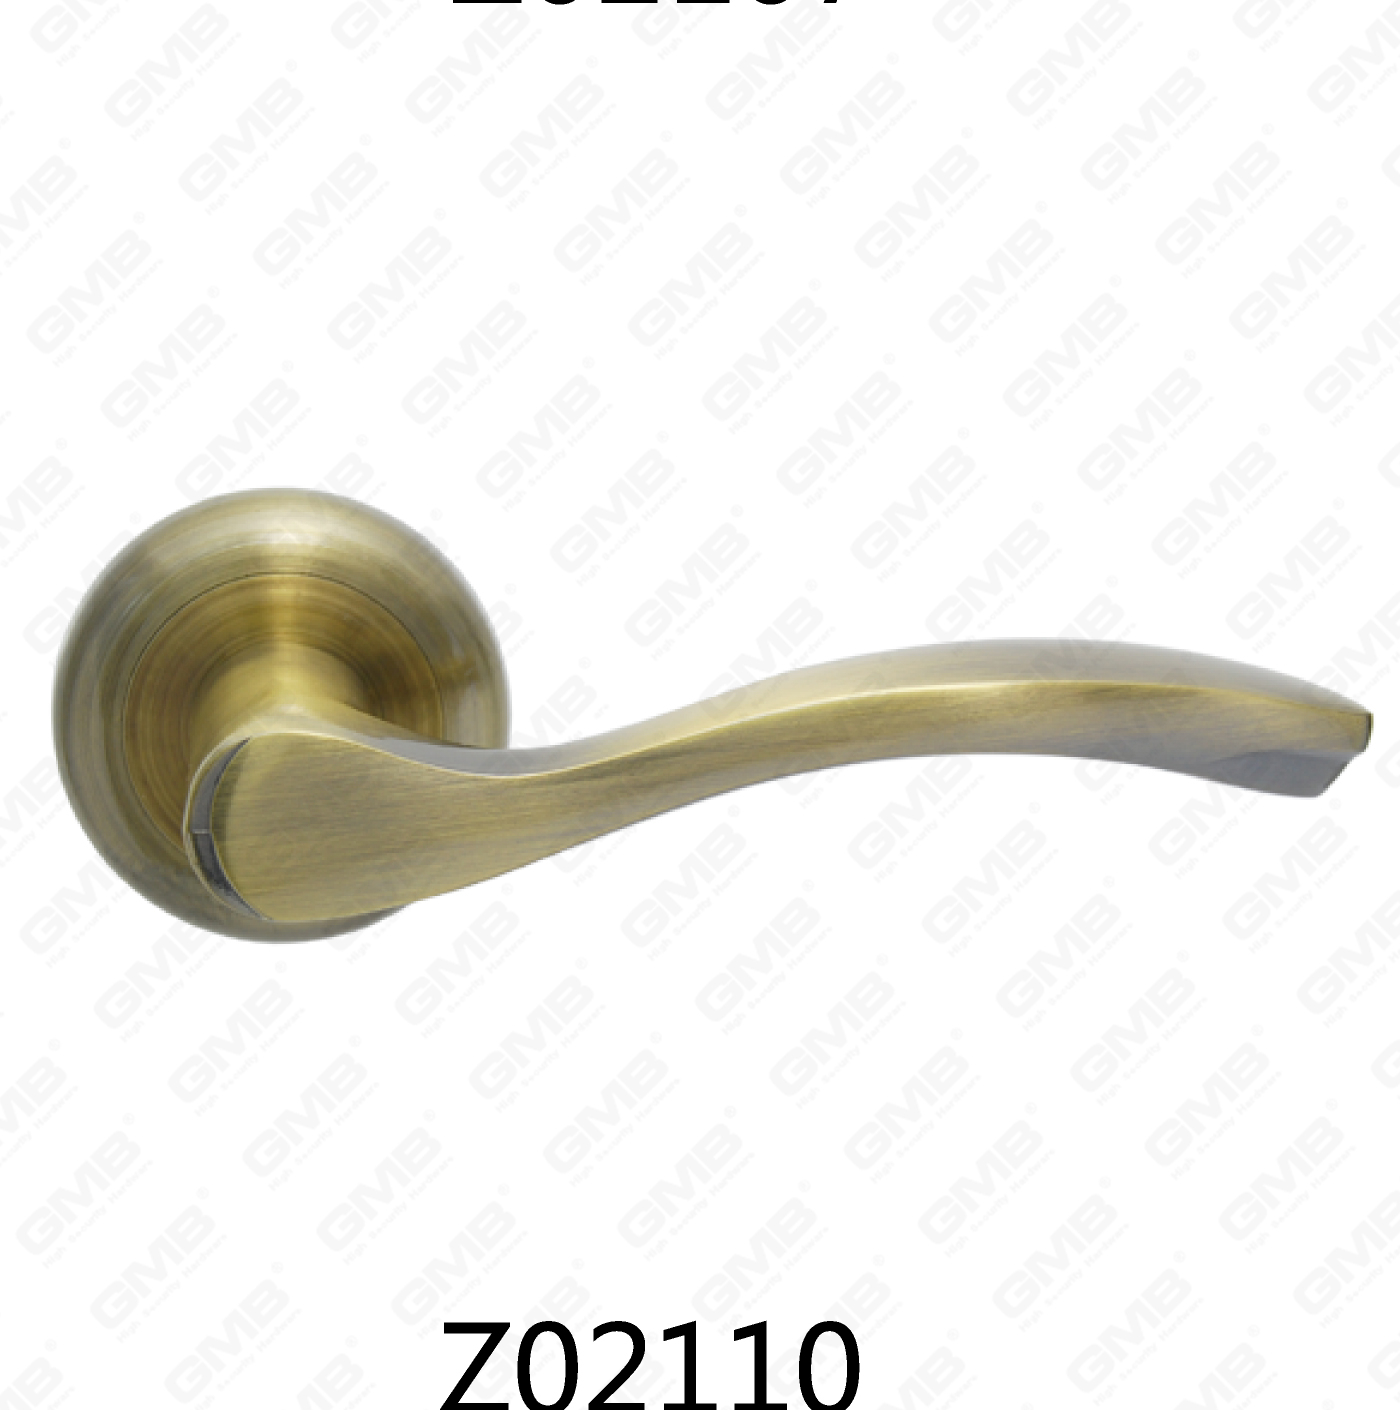 ידית דלת רוזטת אלומיניום מסגסוגת אבץ של Zamak עם רוזטה עגולה (Z02110)